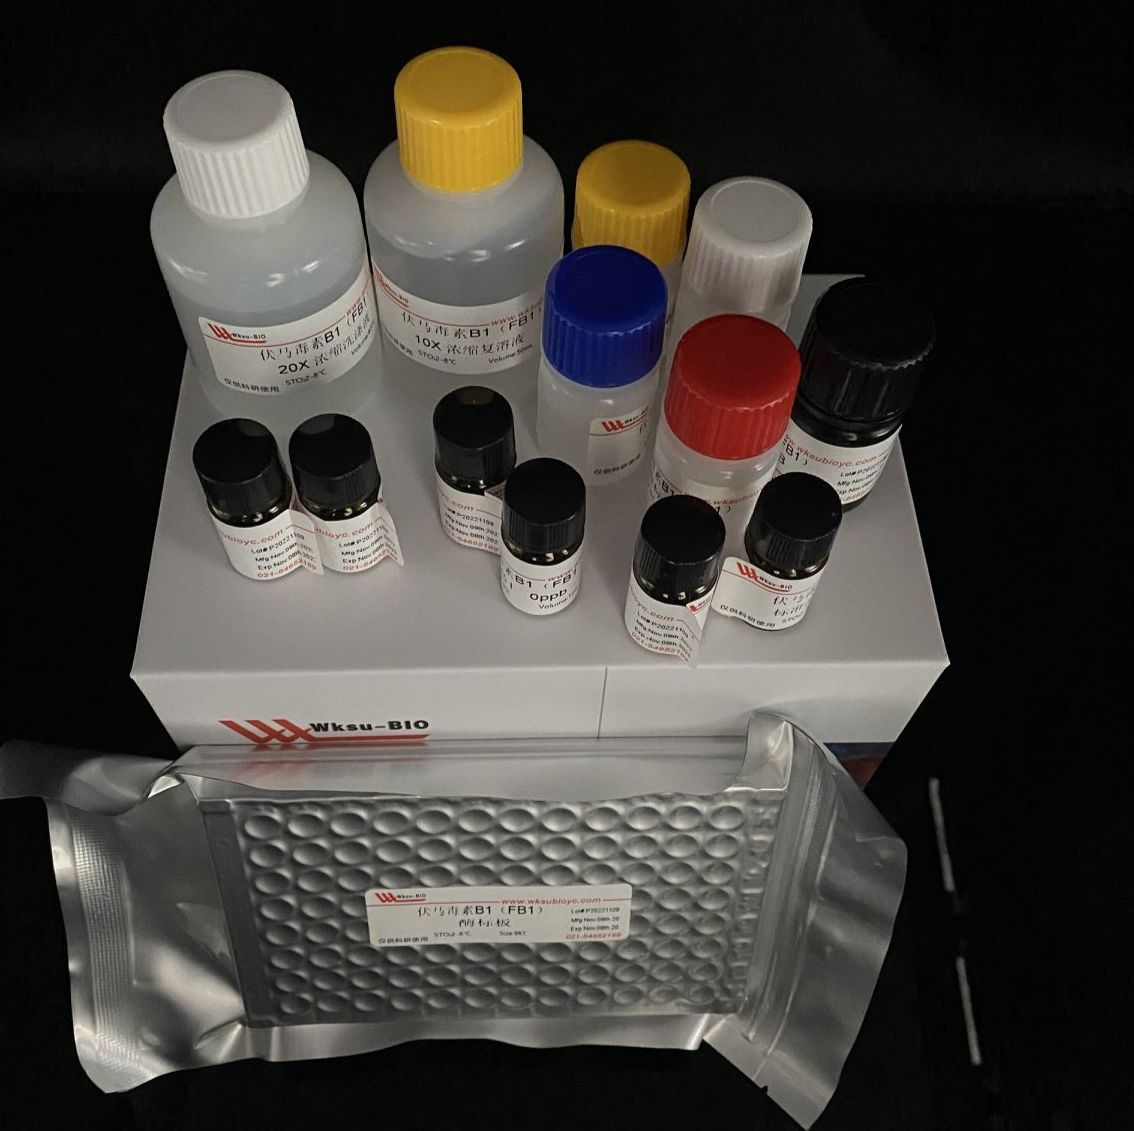 土壤甘氨酸氨基肽酶(S-GAP)测试盒,微板法